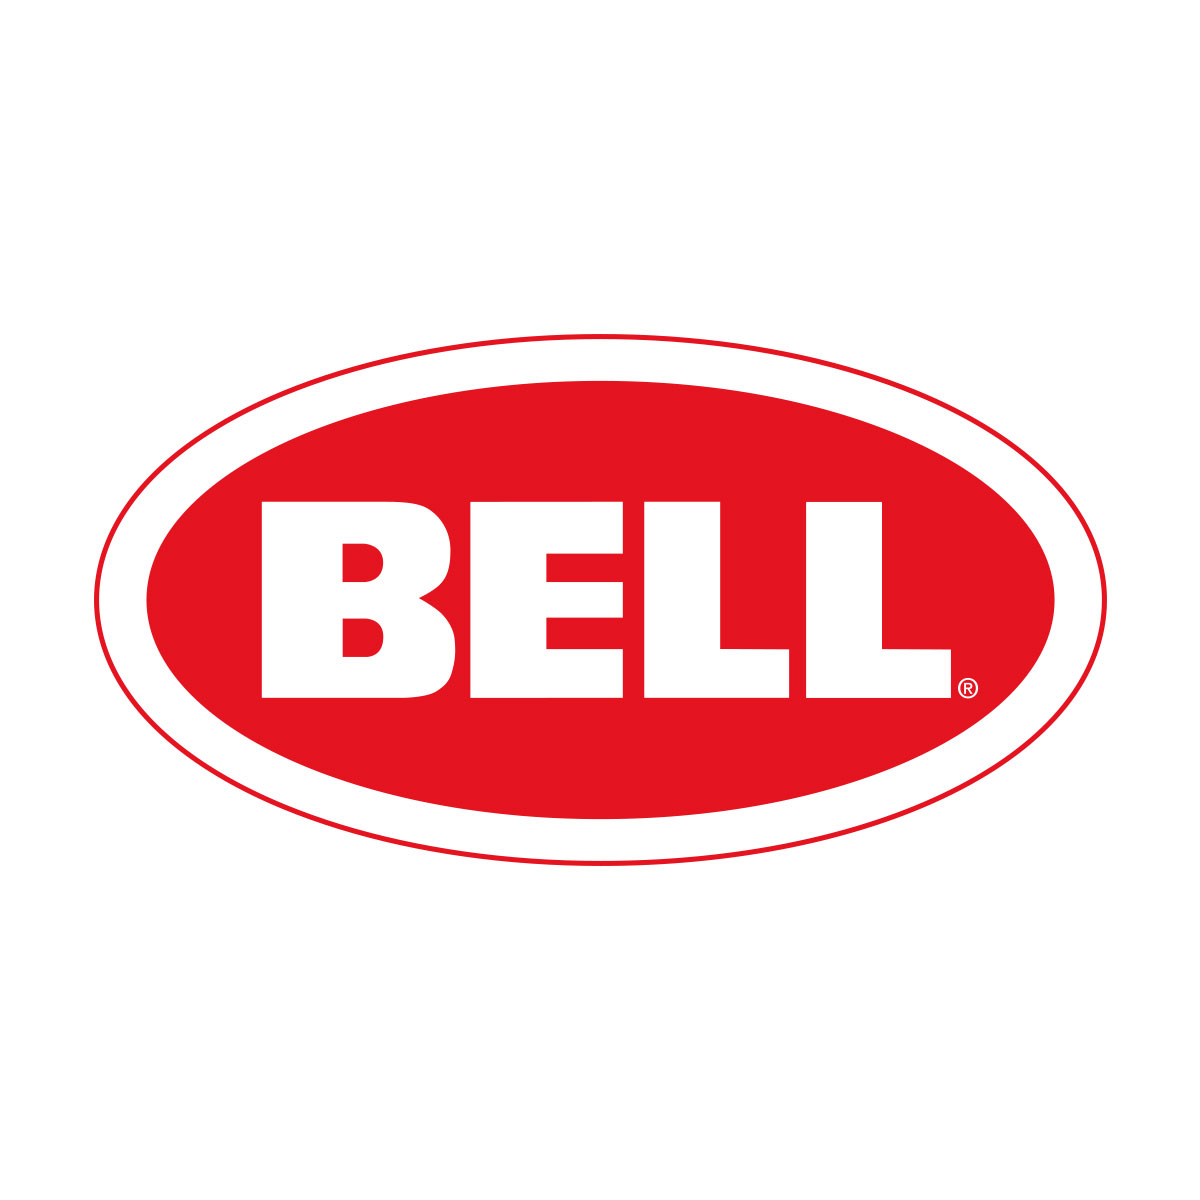 Bell_logo.jpg